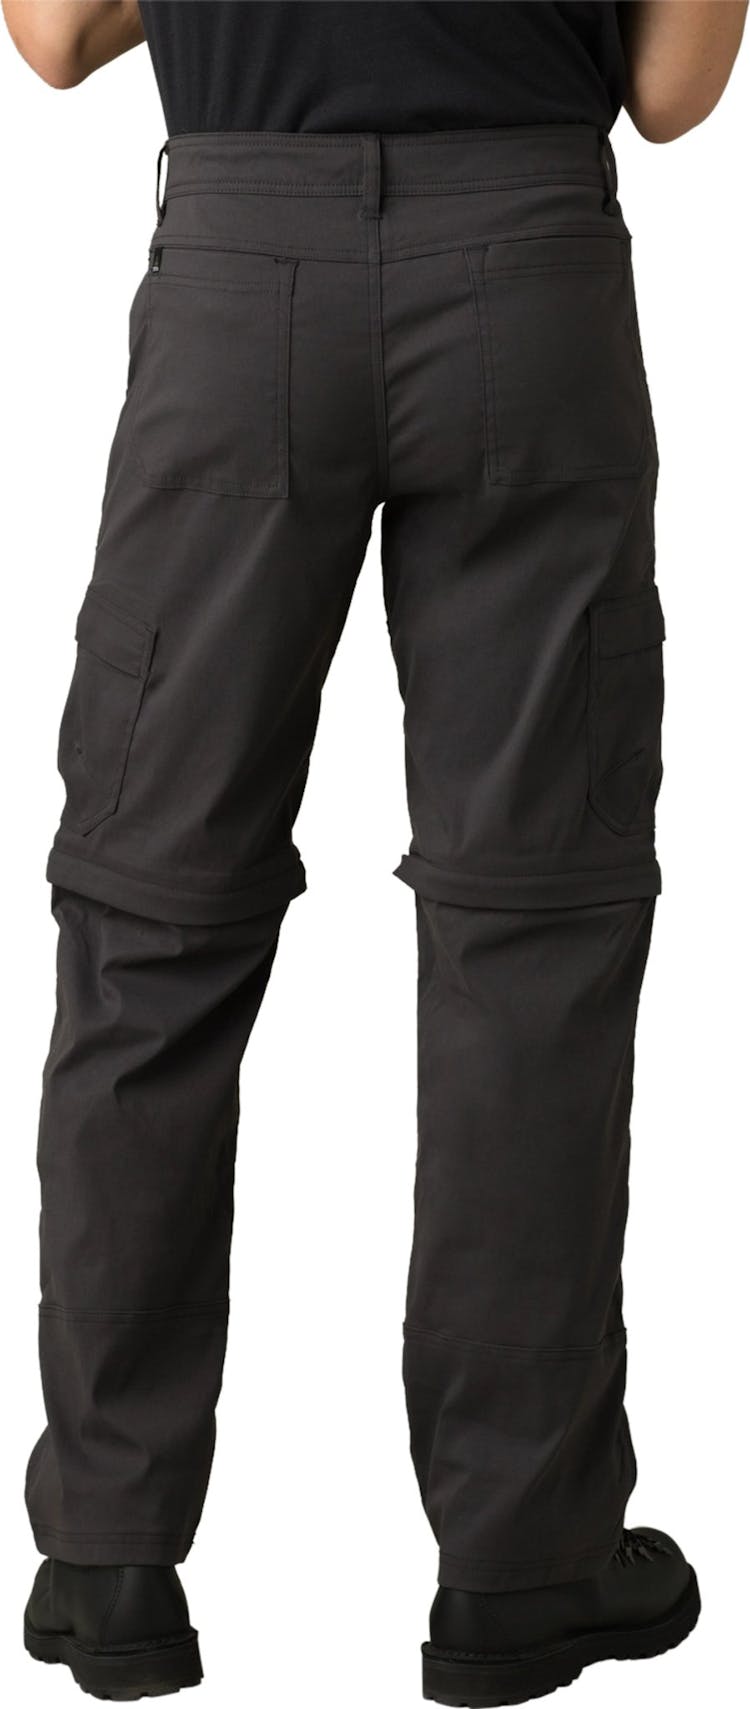 Numéro de l'image de la galerie de produits 3 pour le produit Pantalon convertible Stretch Zion 32 - Homme